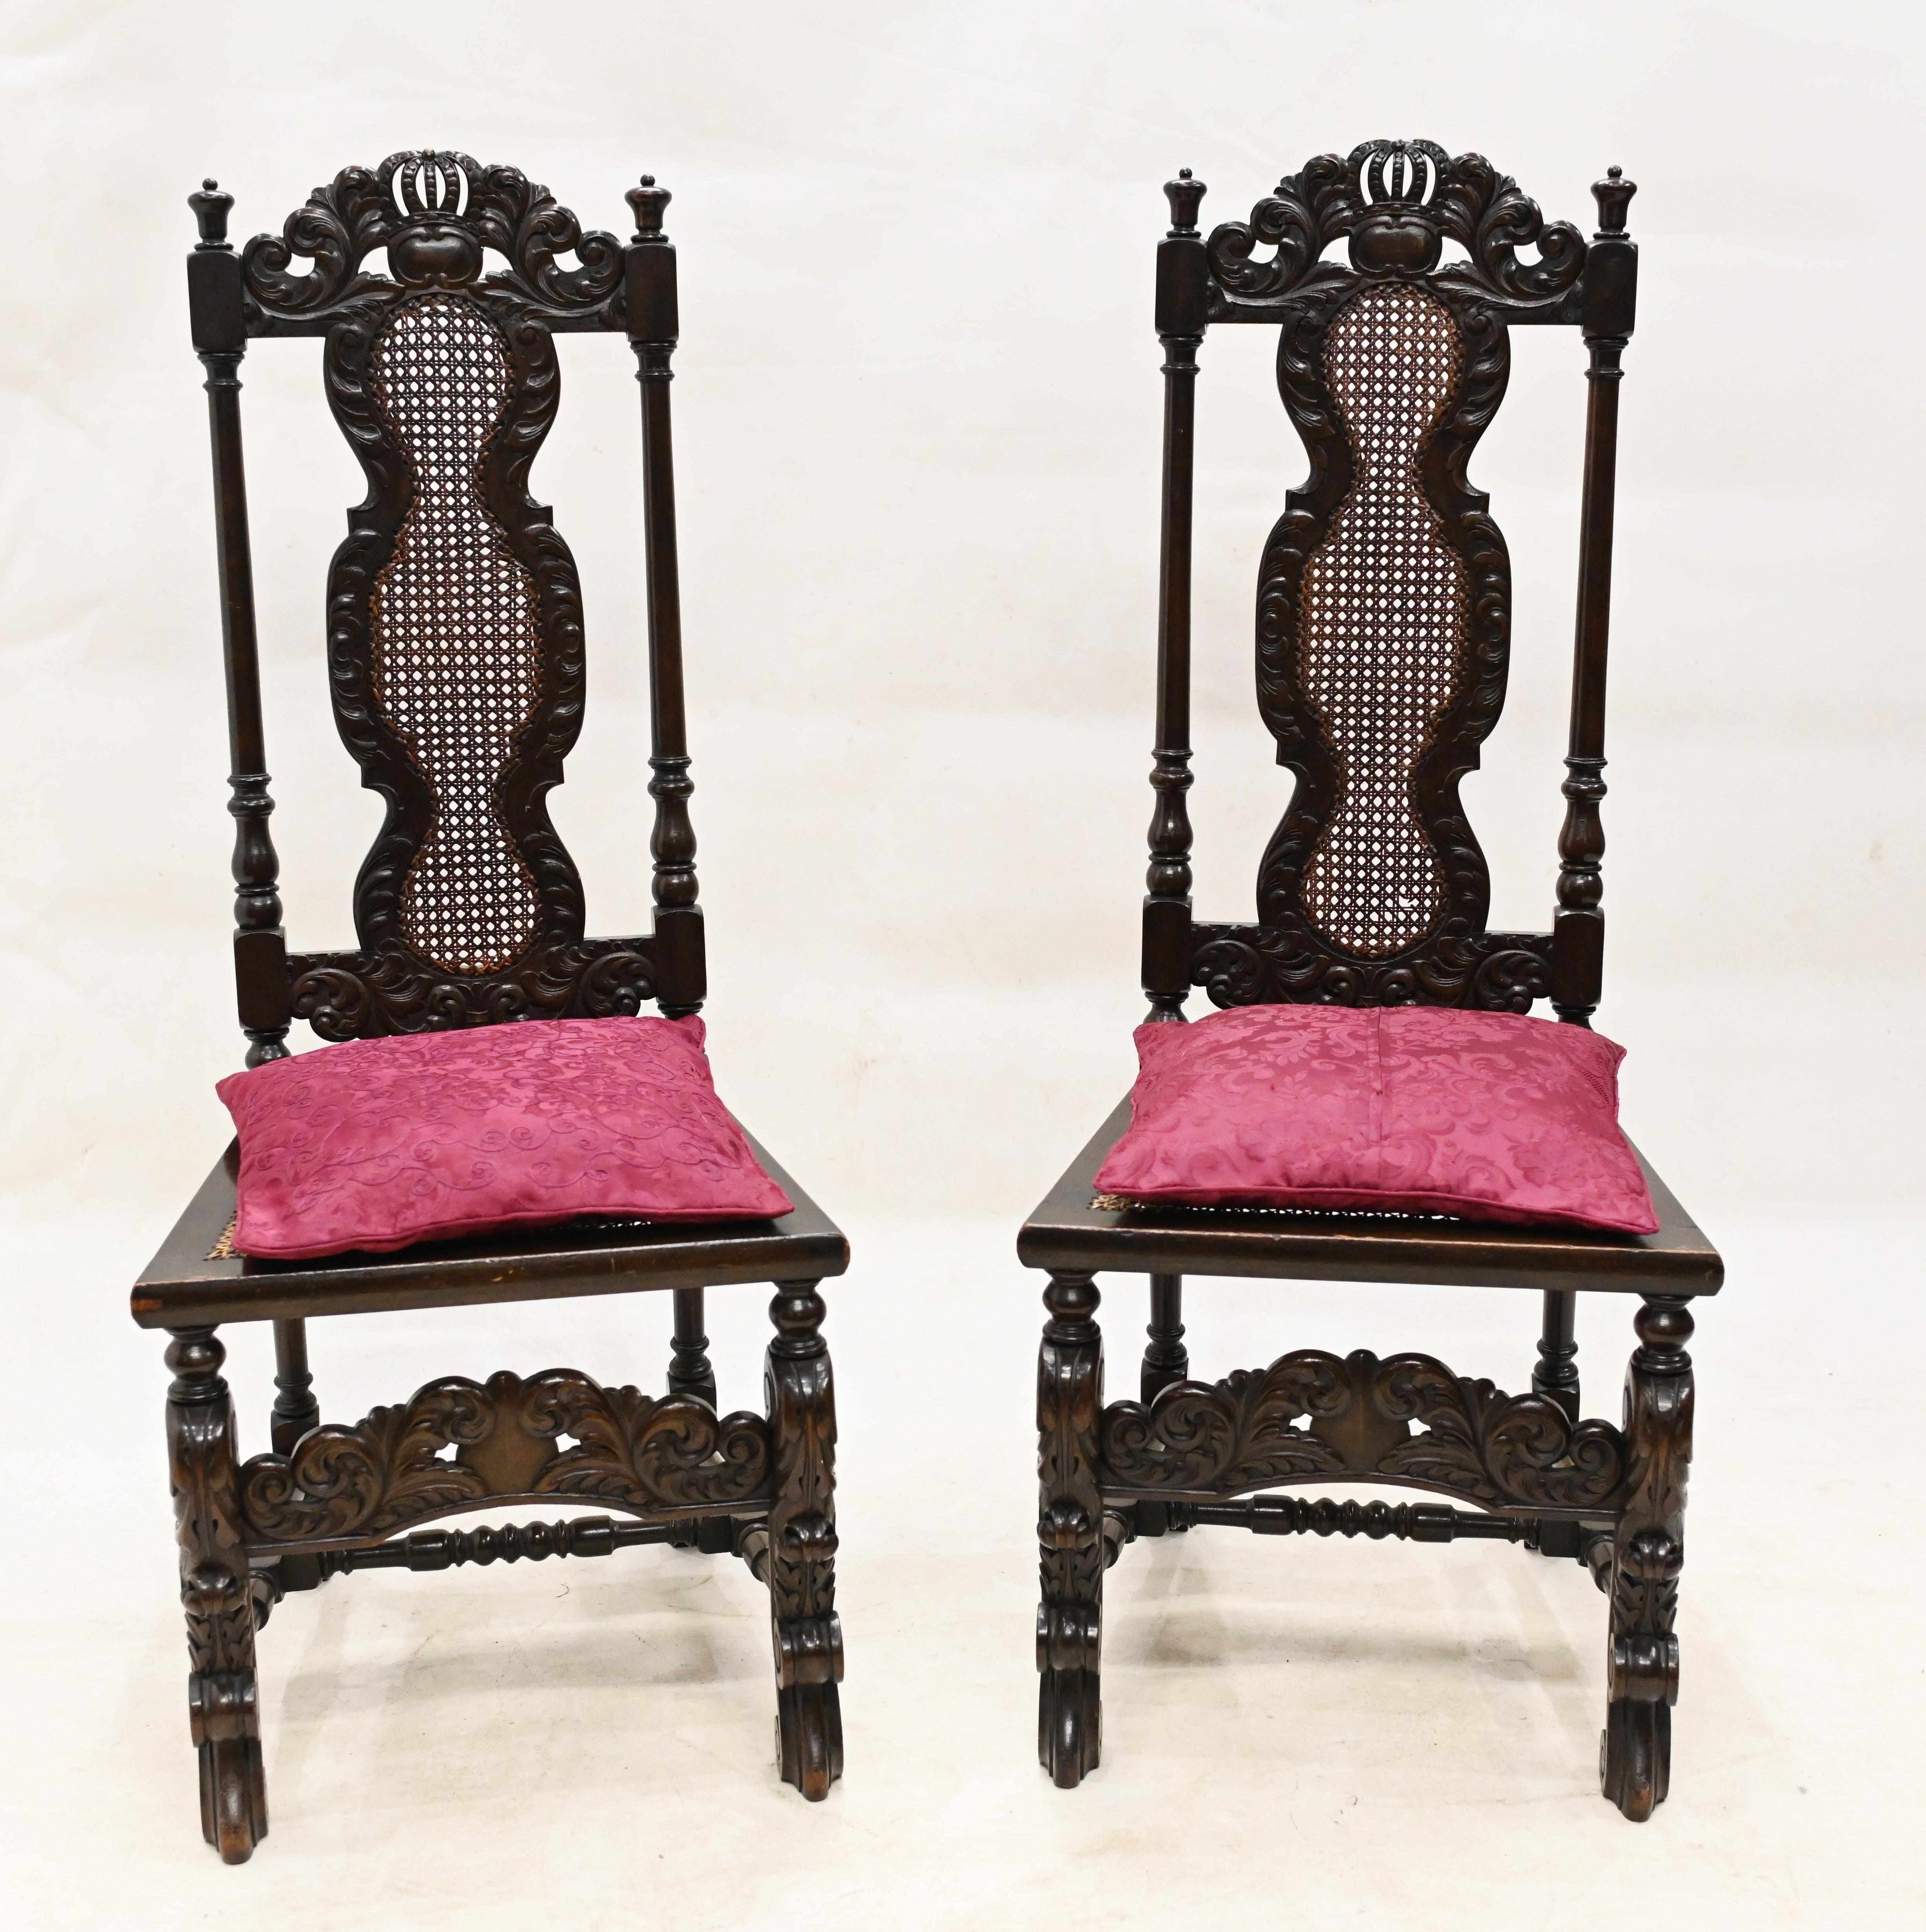 Trendiges Paar antiker Stühle in karolingischer Manier
Wir datieren dieses Paar auf ca. 1880 und sie haben einen tollen Bauernhaus-Look
Besonderheit Bast-Sitze 
Handgeschnitzte Details sind sehr aufwendig und verziert
Gekauft aus einem Privathaus im